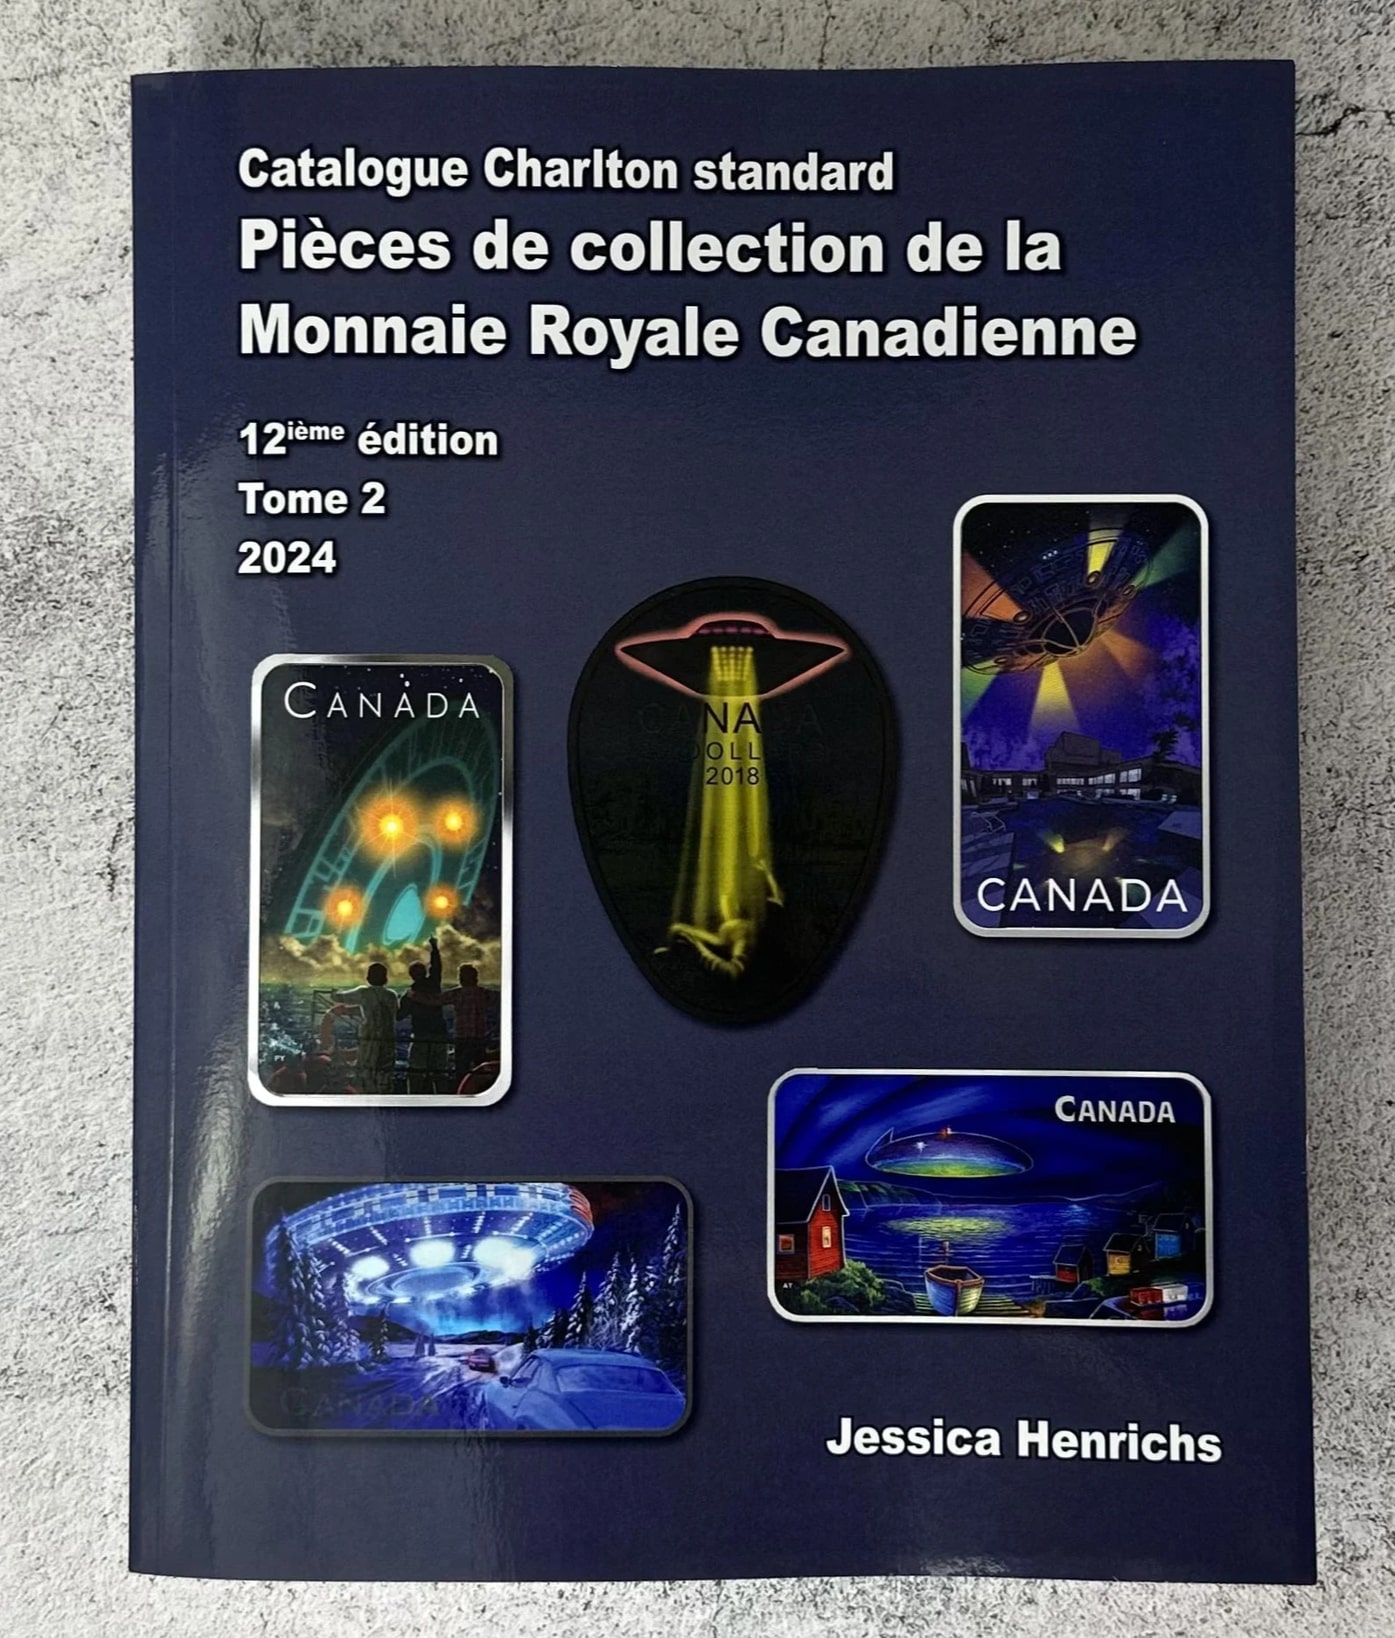 A CHARLTON STANDARD CATALOGUE -  PIÈCES DE COLLECTION DE LA MONNAIE ROYALE CANADIENNE 2024 : TOME 2 (12ME ÉDITION)